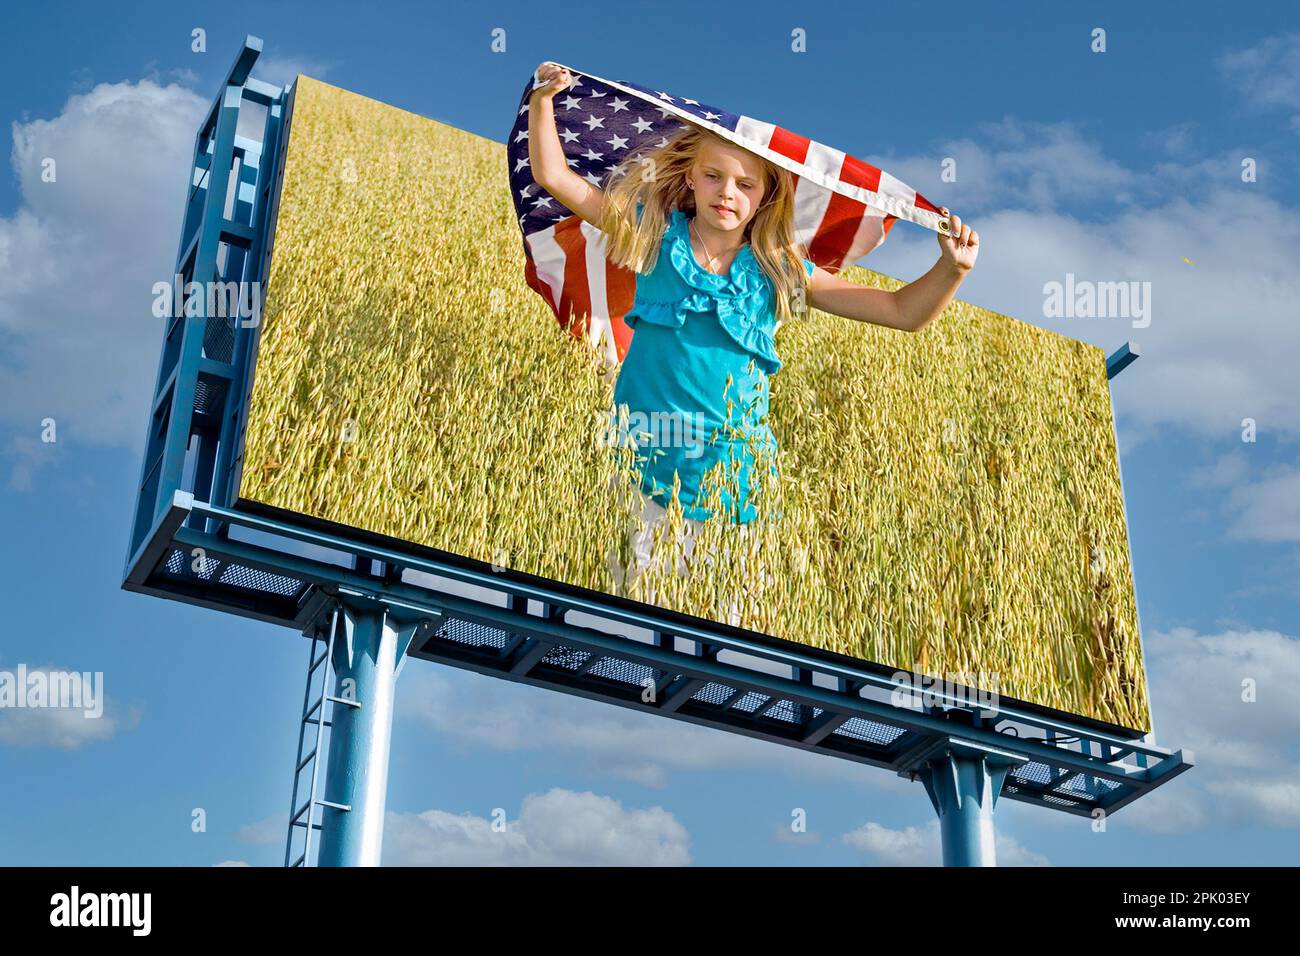 Reklametafelfoto eines jungen kaukasischen Mädchens, das mit einer amerikanischen Flagge in einem Weizenfeld mit Himmelshintergrund rennt Stockfoto